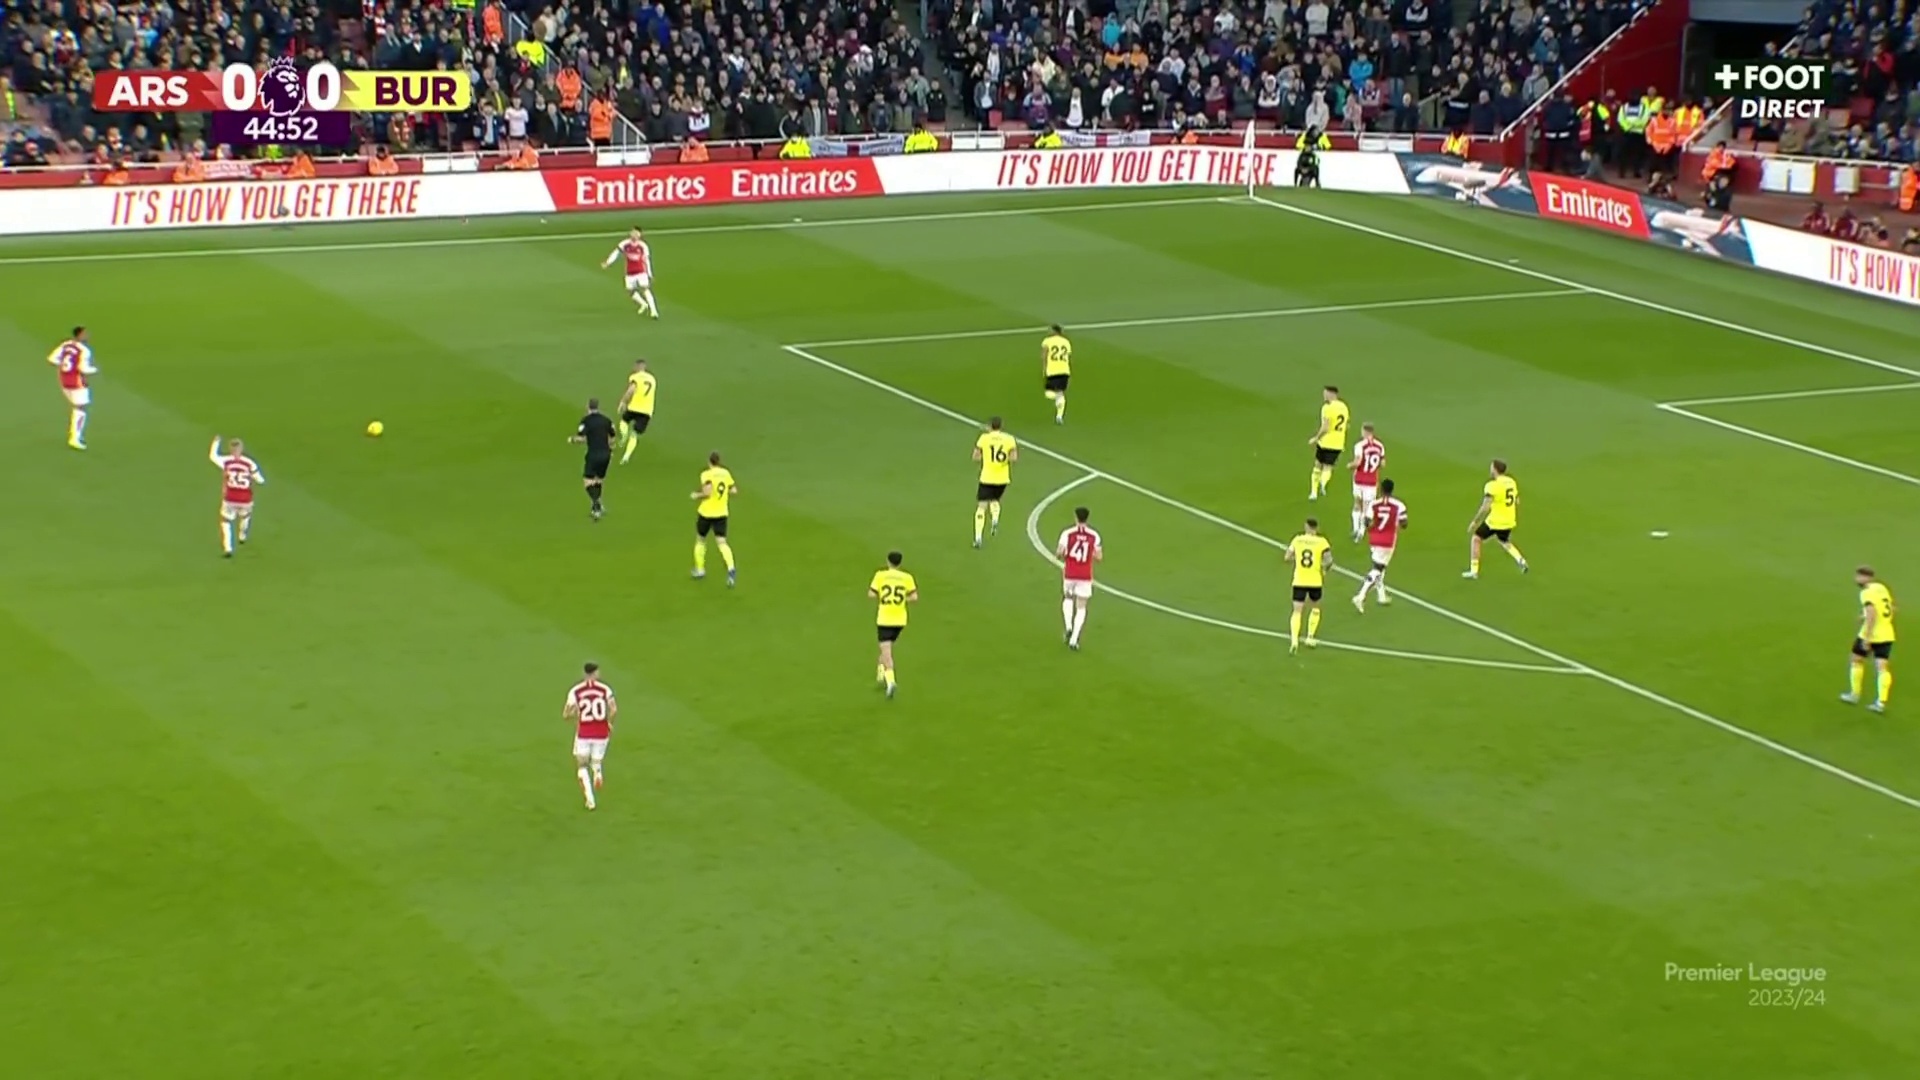 Arsenal [1] - 0 Burnley - Leandro Trossard 45+1'